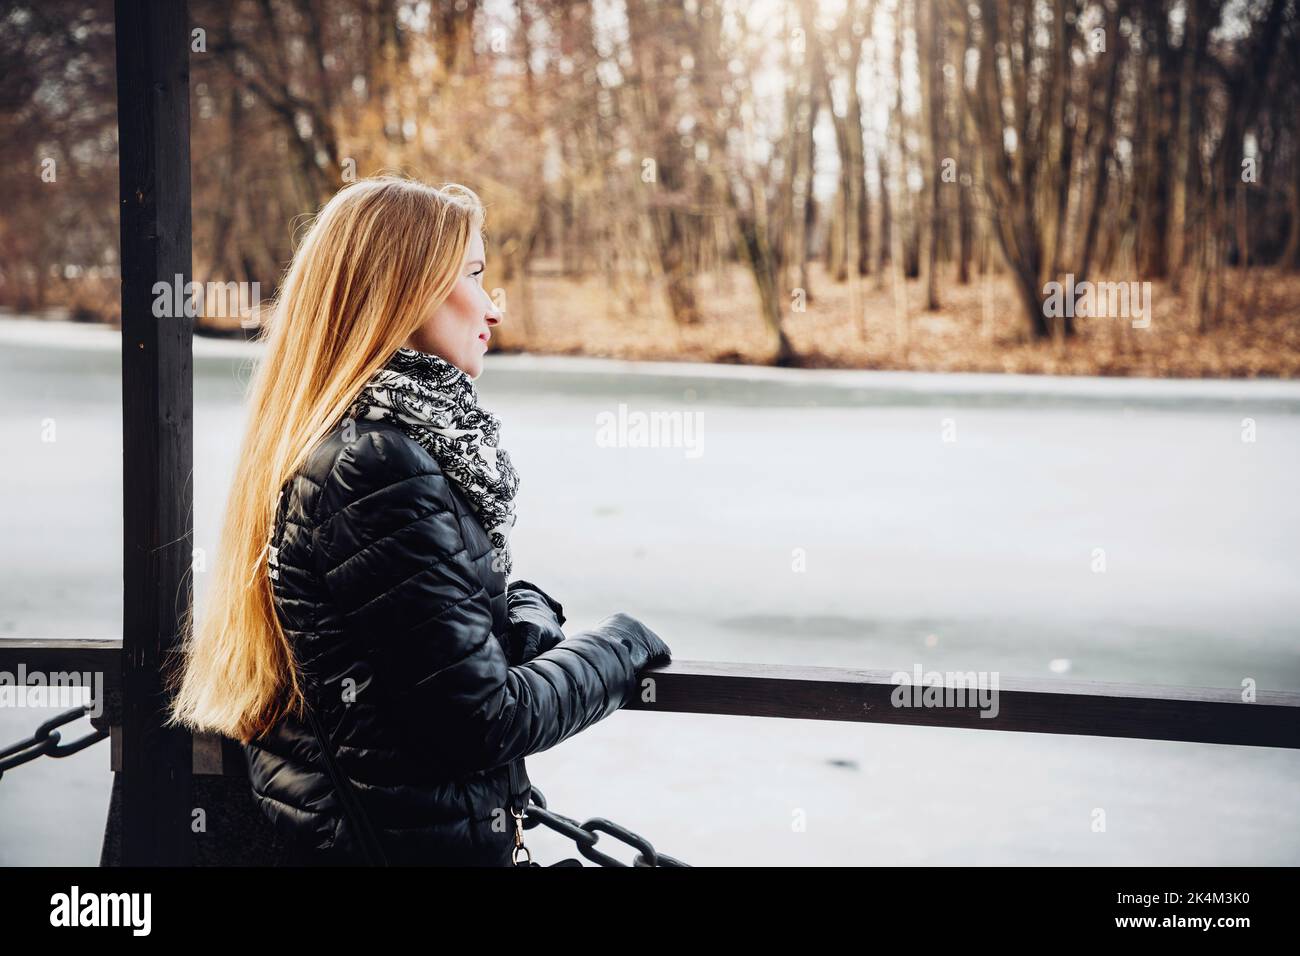 Das hübsche blonde Mädchen, das einen schwarzen Mantel, Handschuhe und Schal trägt, blickt über einen gefrorenen See; Bäume im Hintergrund Stockfoto